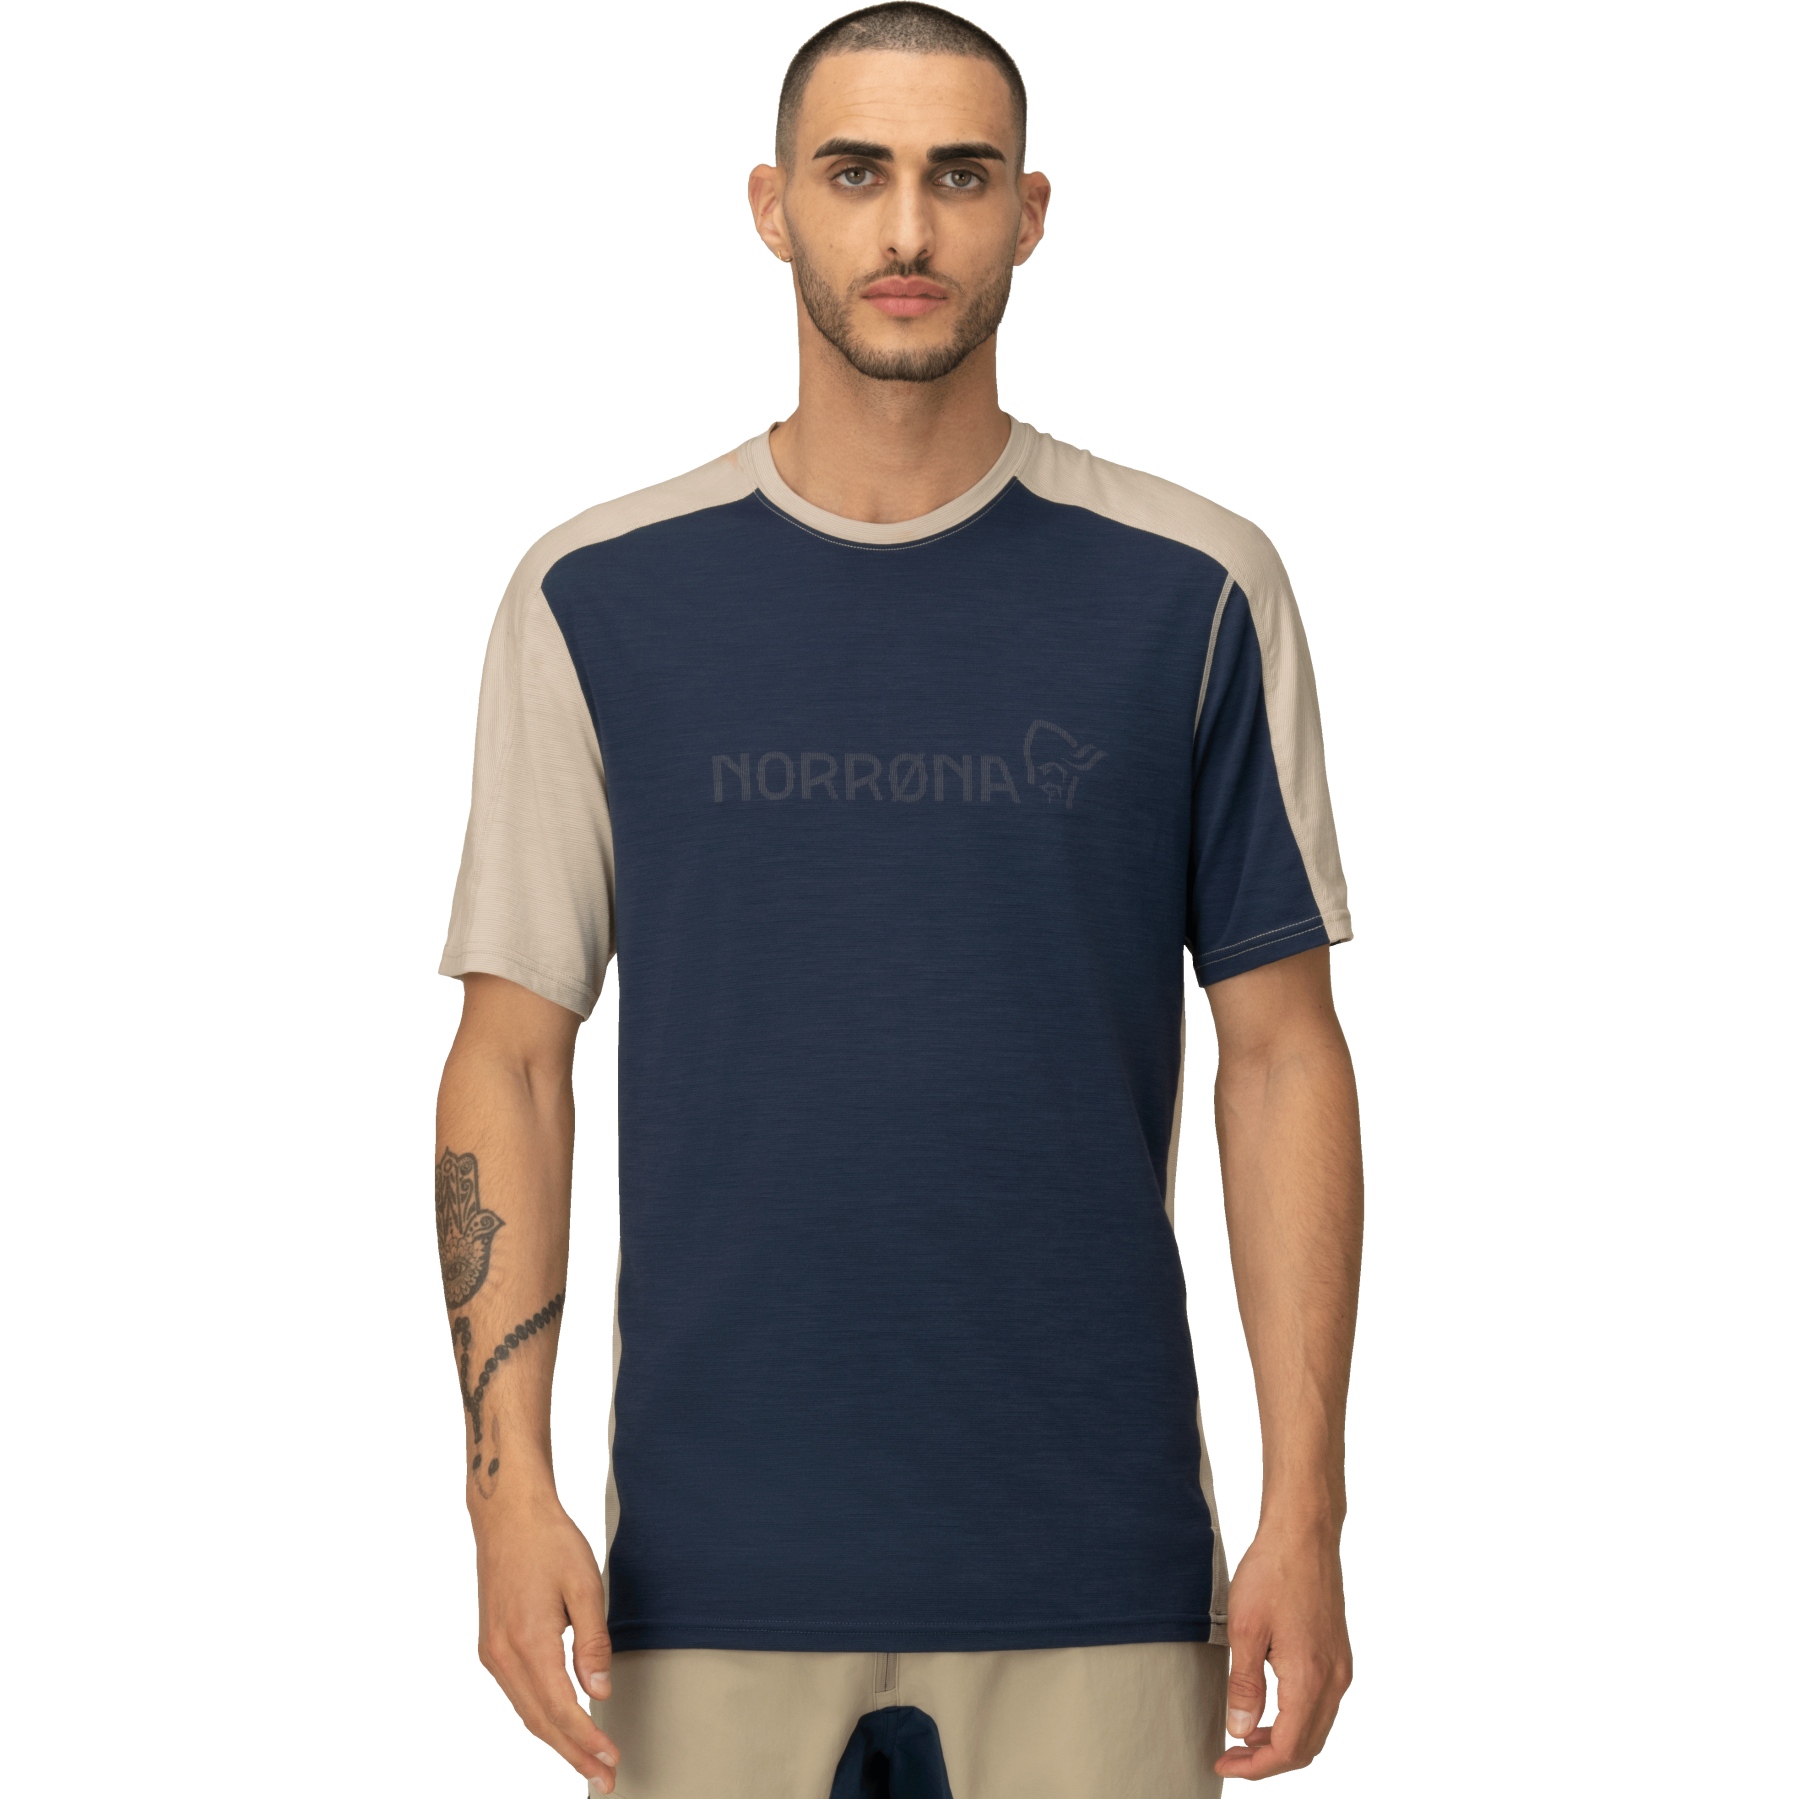 Produktbild von Norrona falketind equaliser merino T-Shirt Herren - Indigo Night/Pure Cashmere